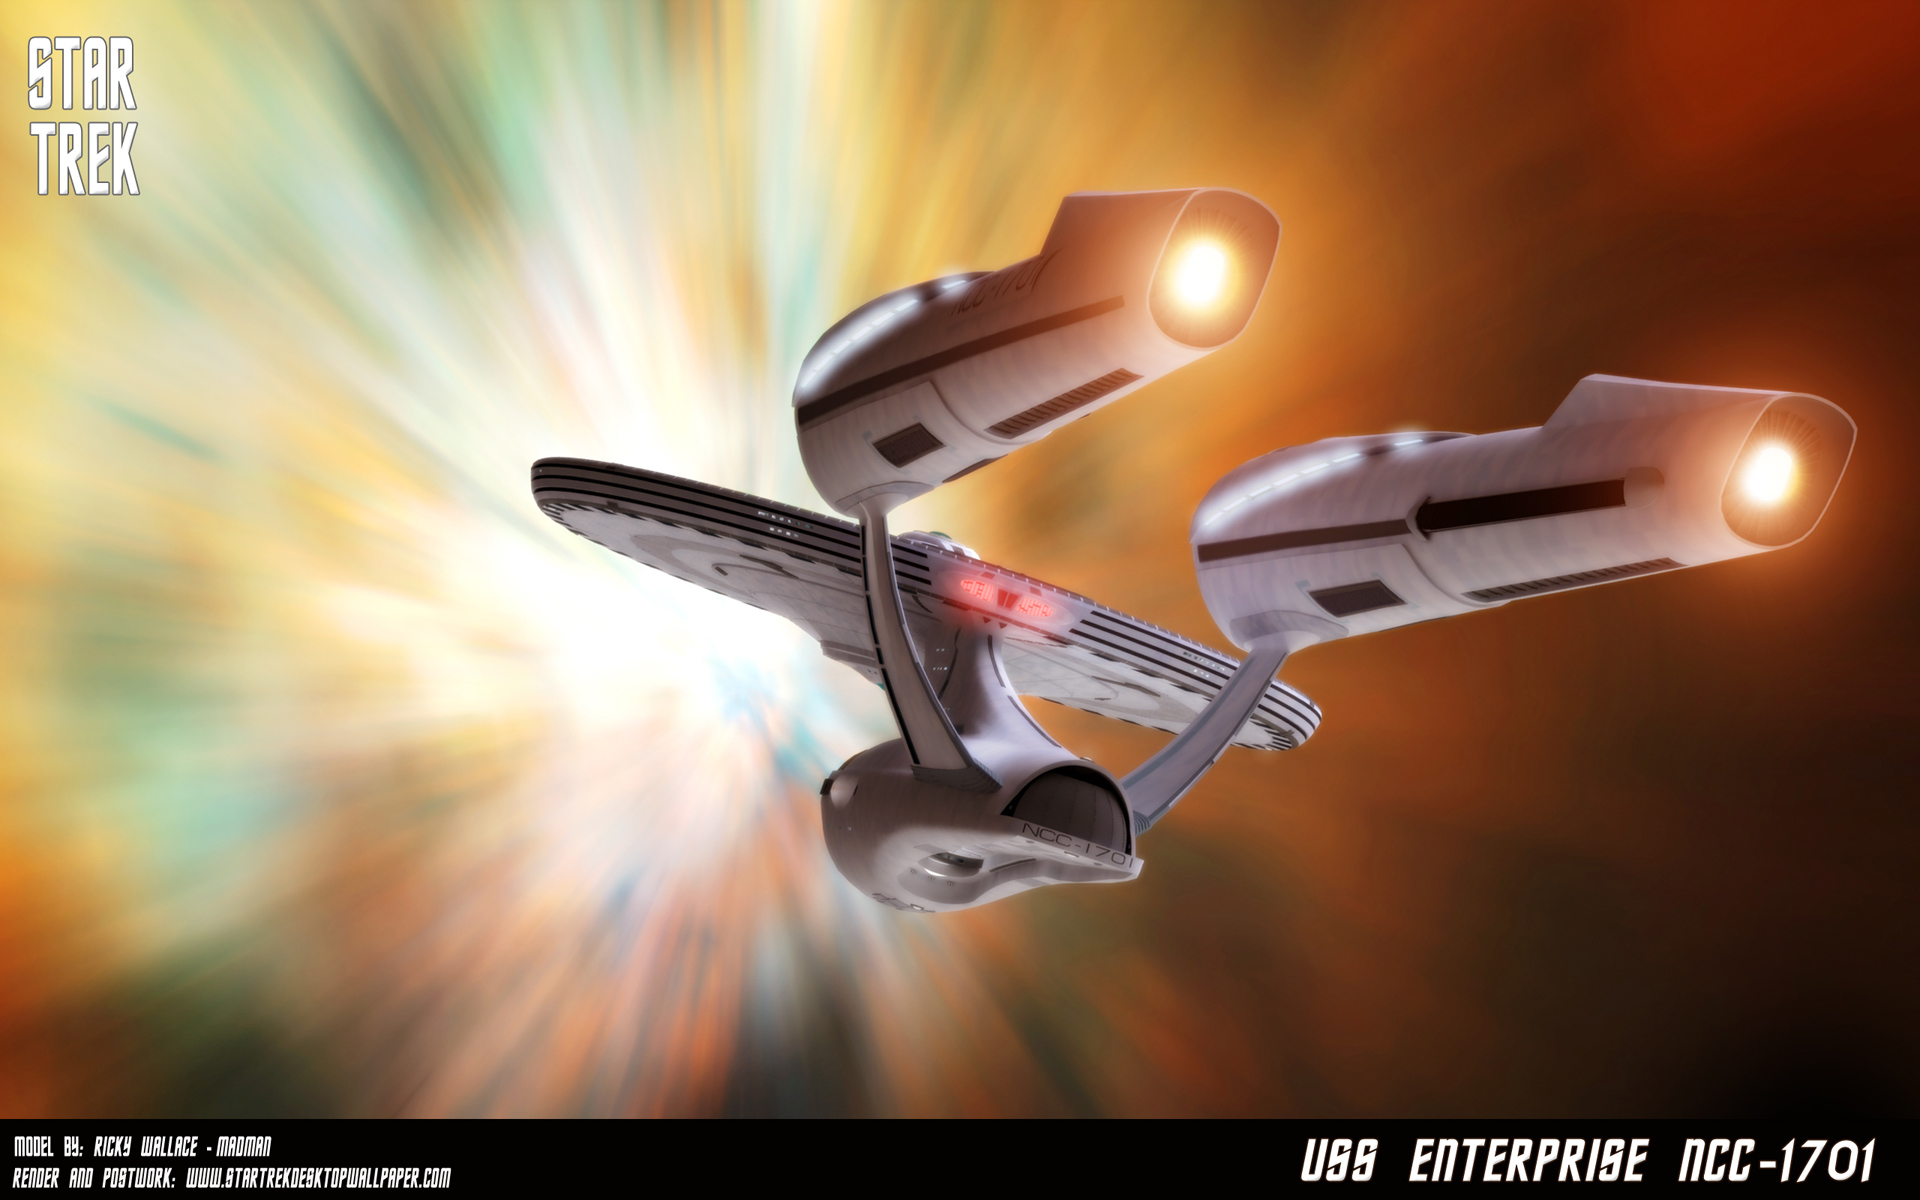 - Star Trek Enterprise NCC 1701 Traveling At Warp Speed - free Star Trek computer desktop wallpaper, pictures, images.